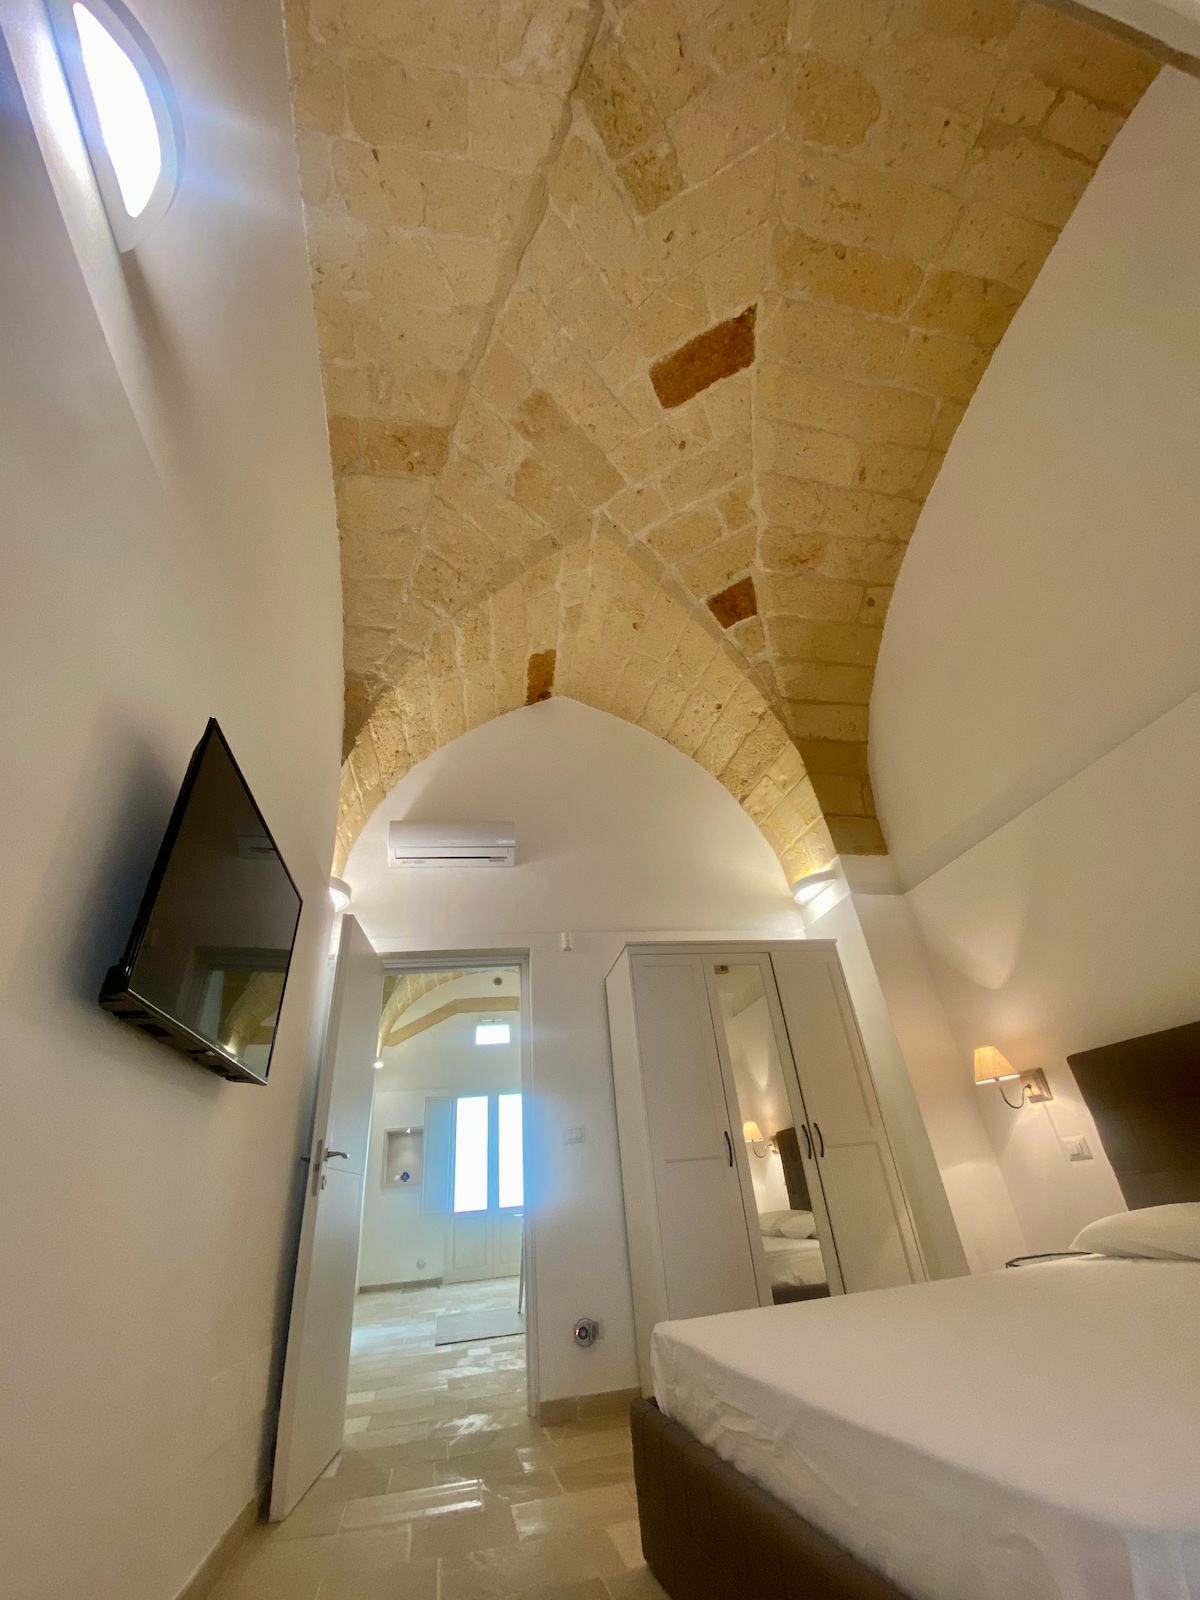 Dadaumpa suite nel centro storico di Lecce